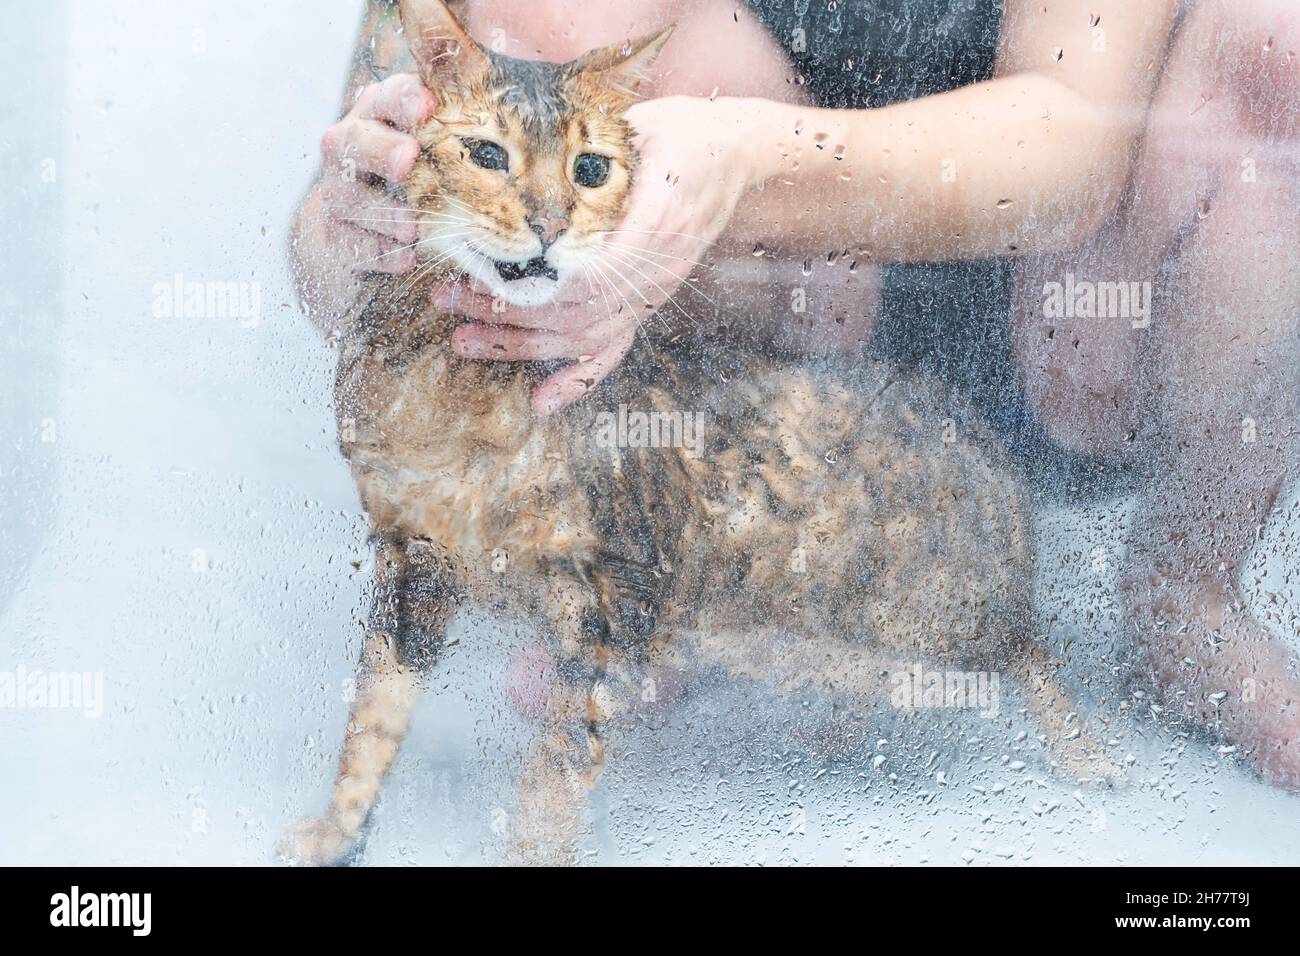 Drôle de chat humide se lavant dans la cabine de douche. Baignade ou exposition à la race bengale Cat Concept d'hygiène des animaux. Banque D'Images